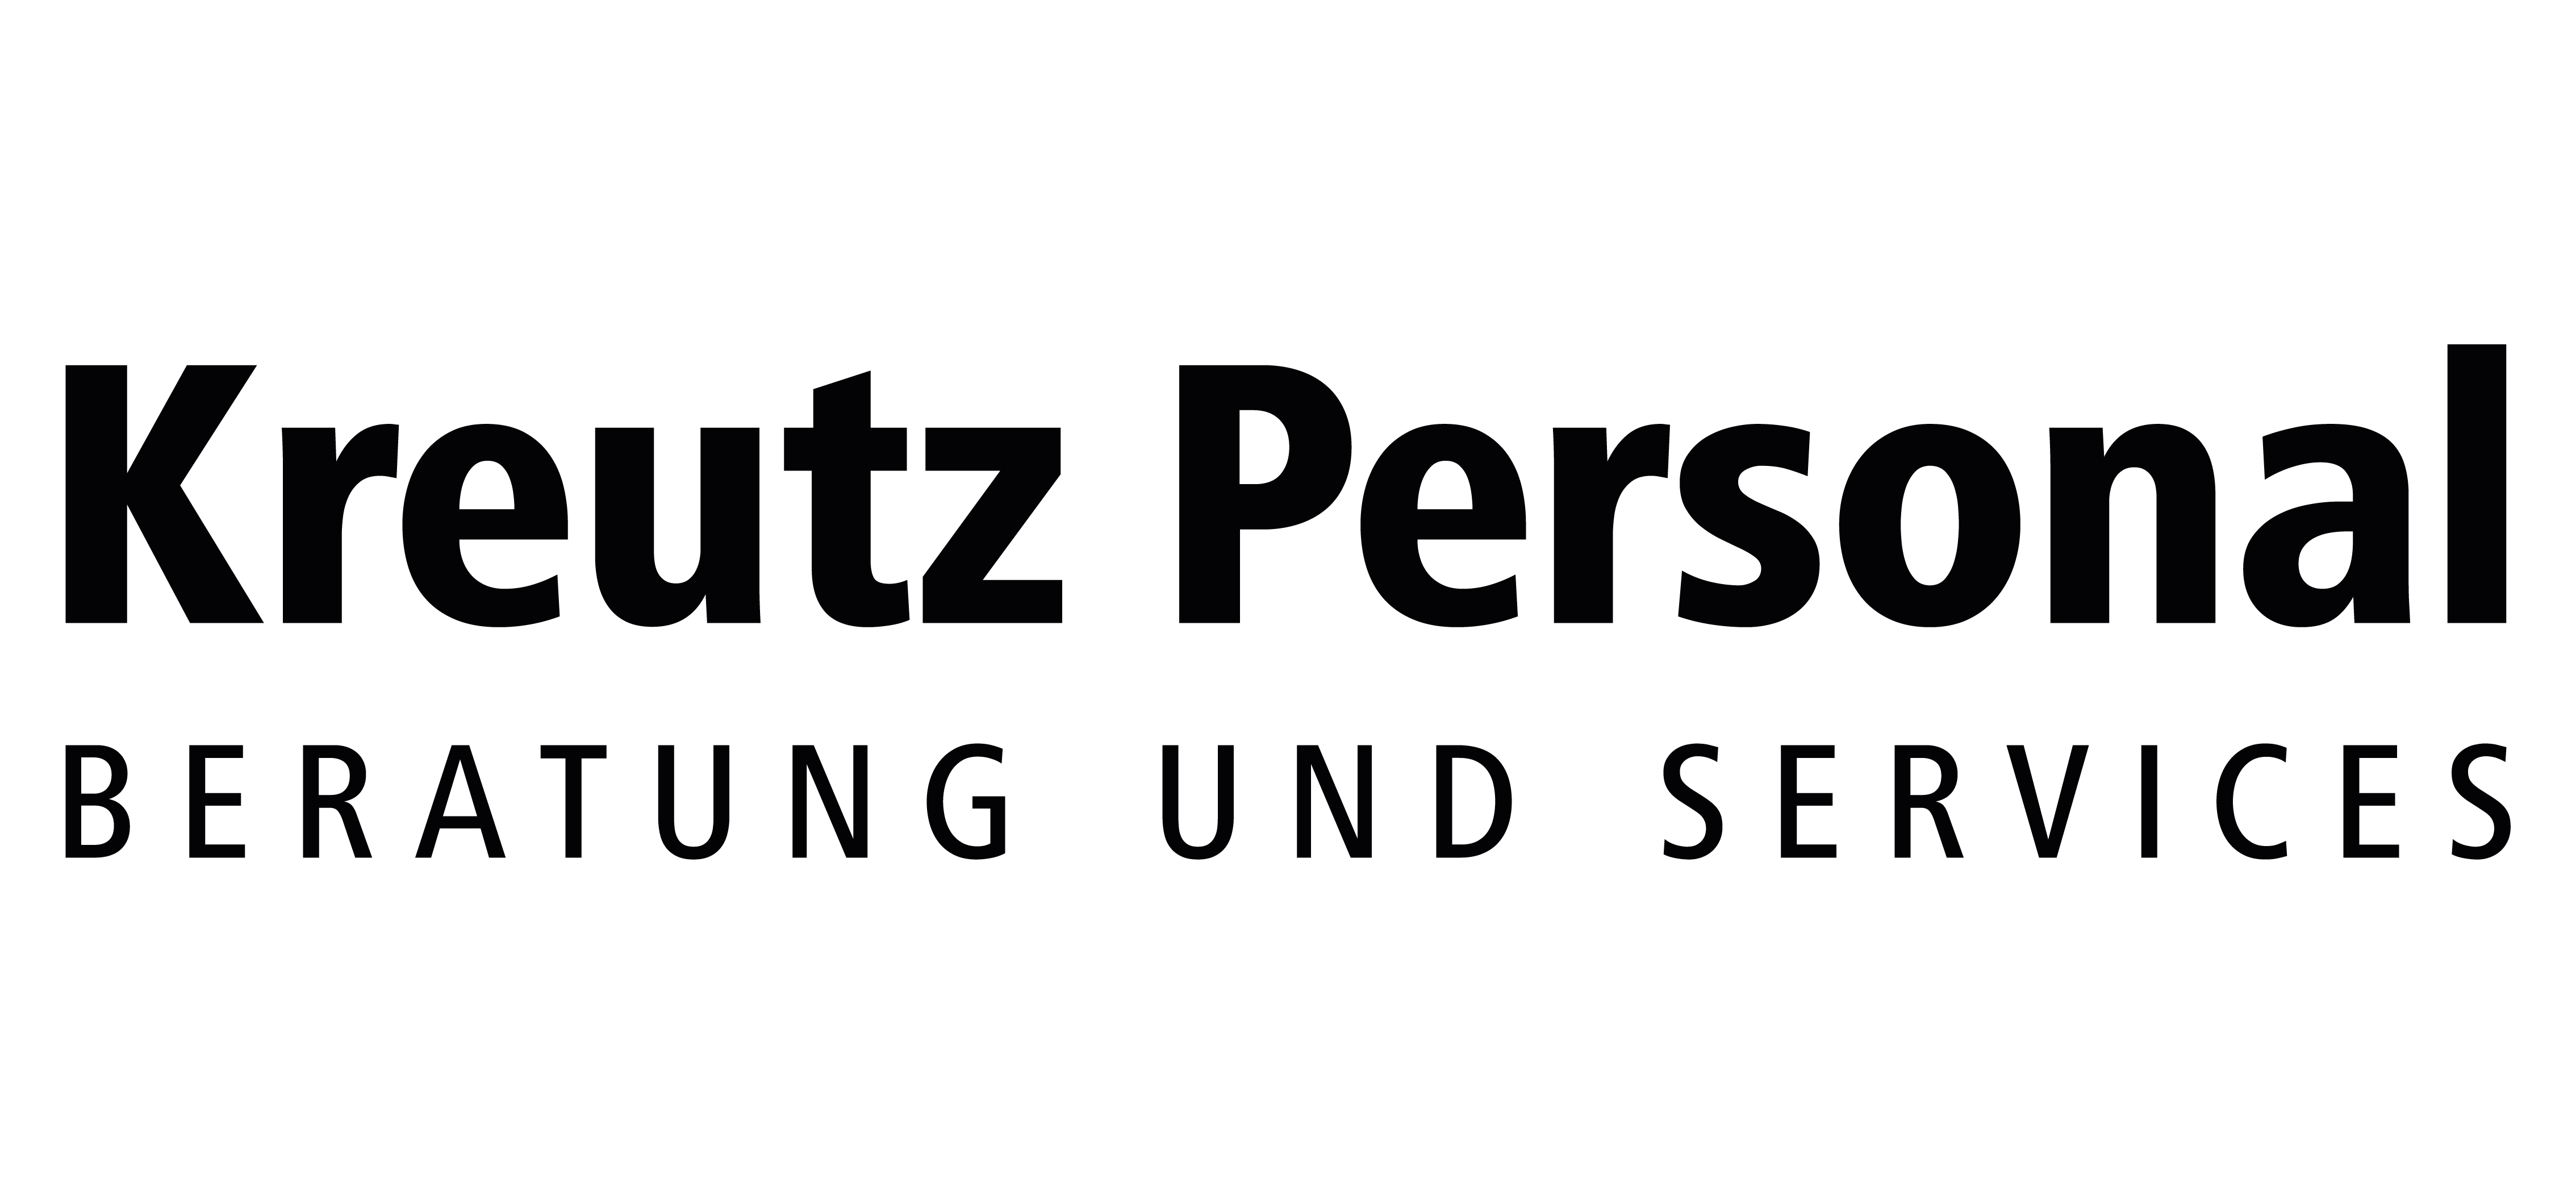 Kreutz Personalberatung und Services GmbH